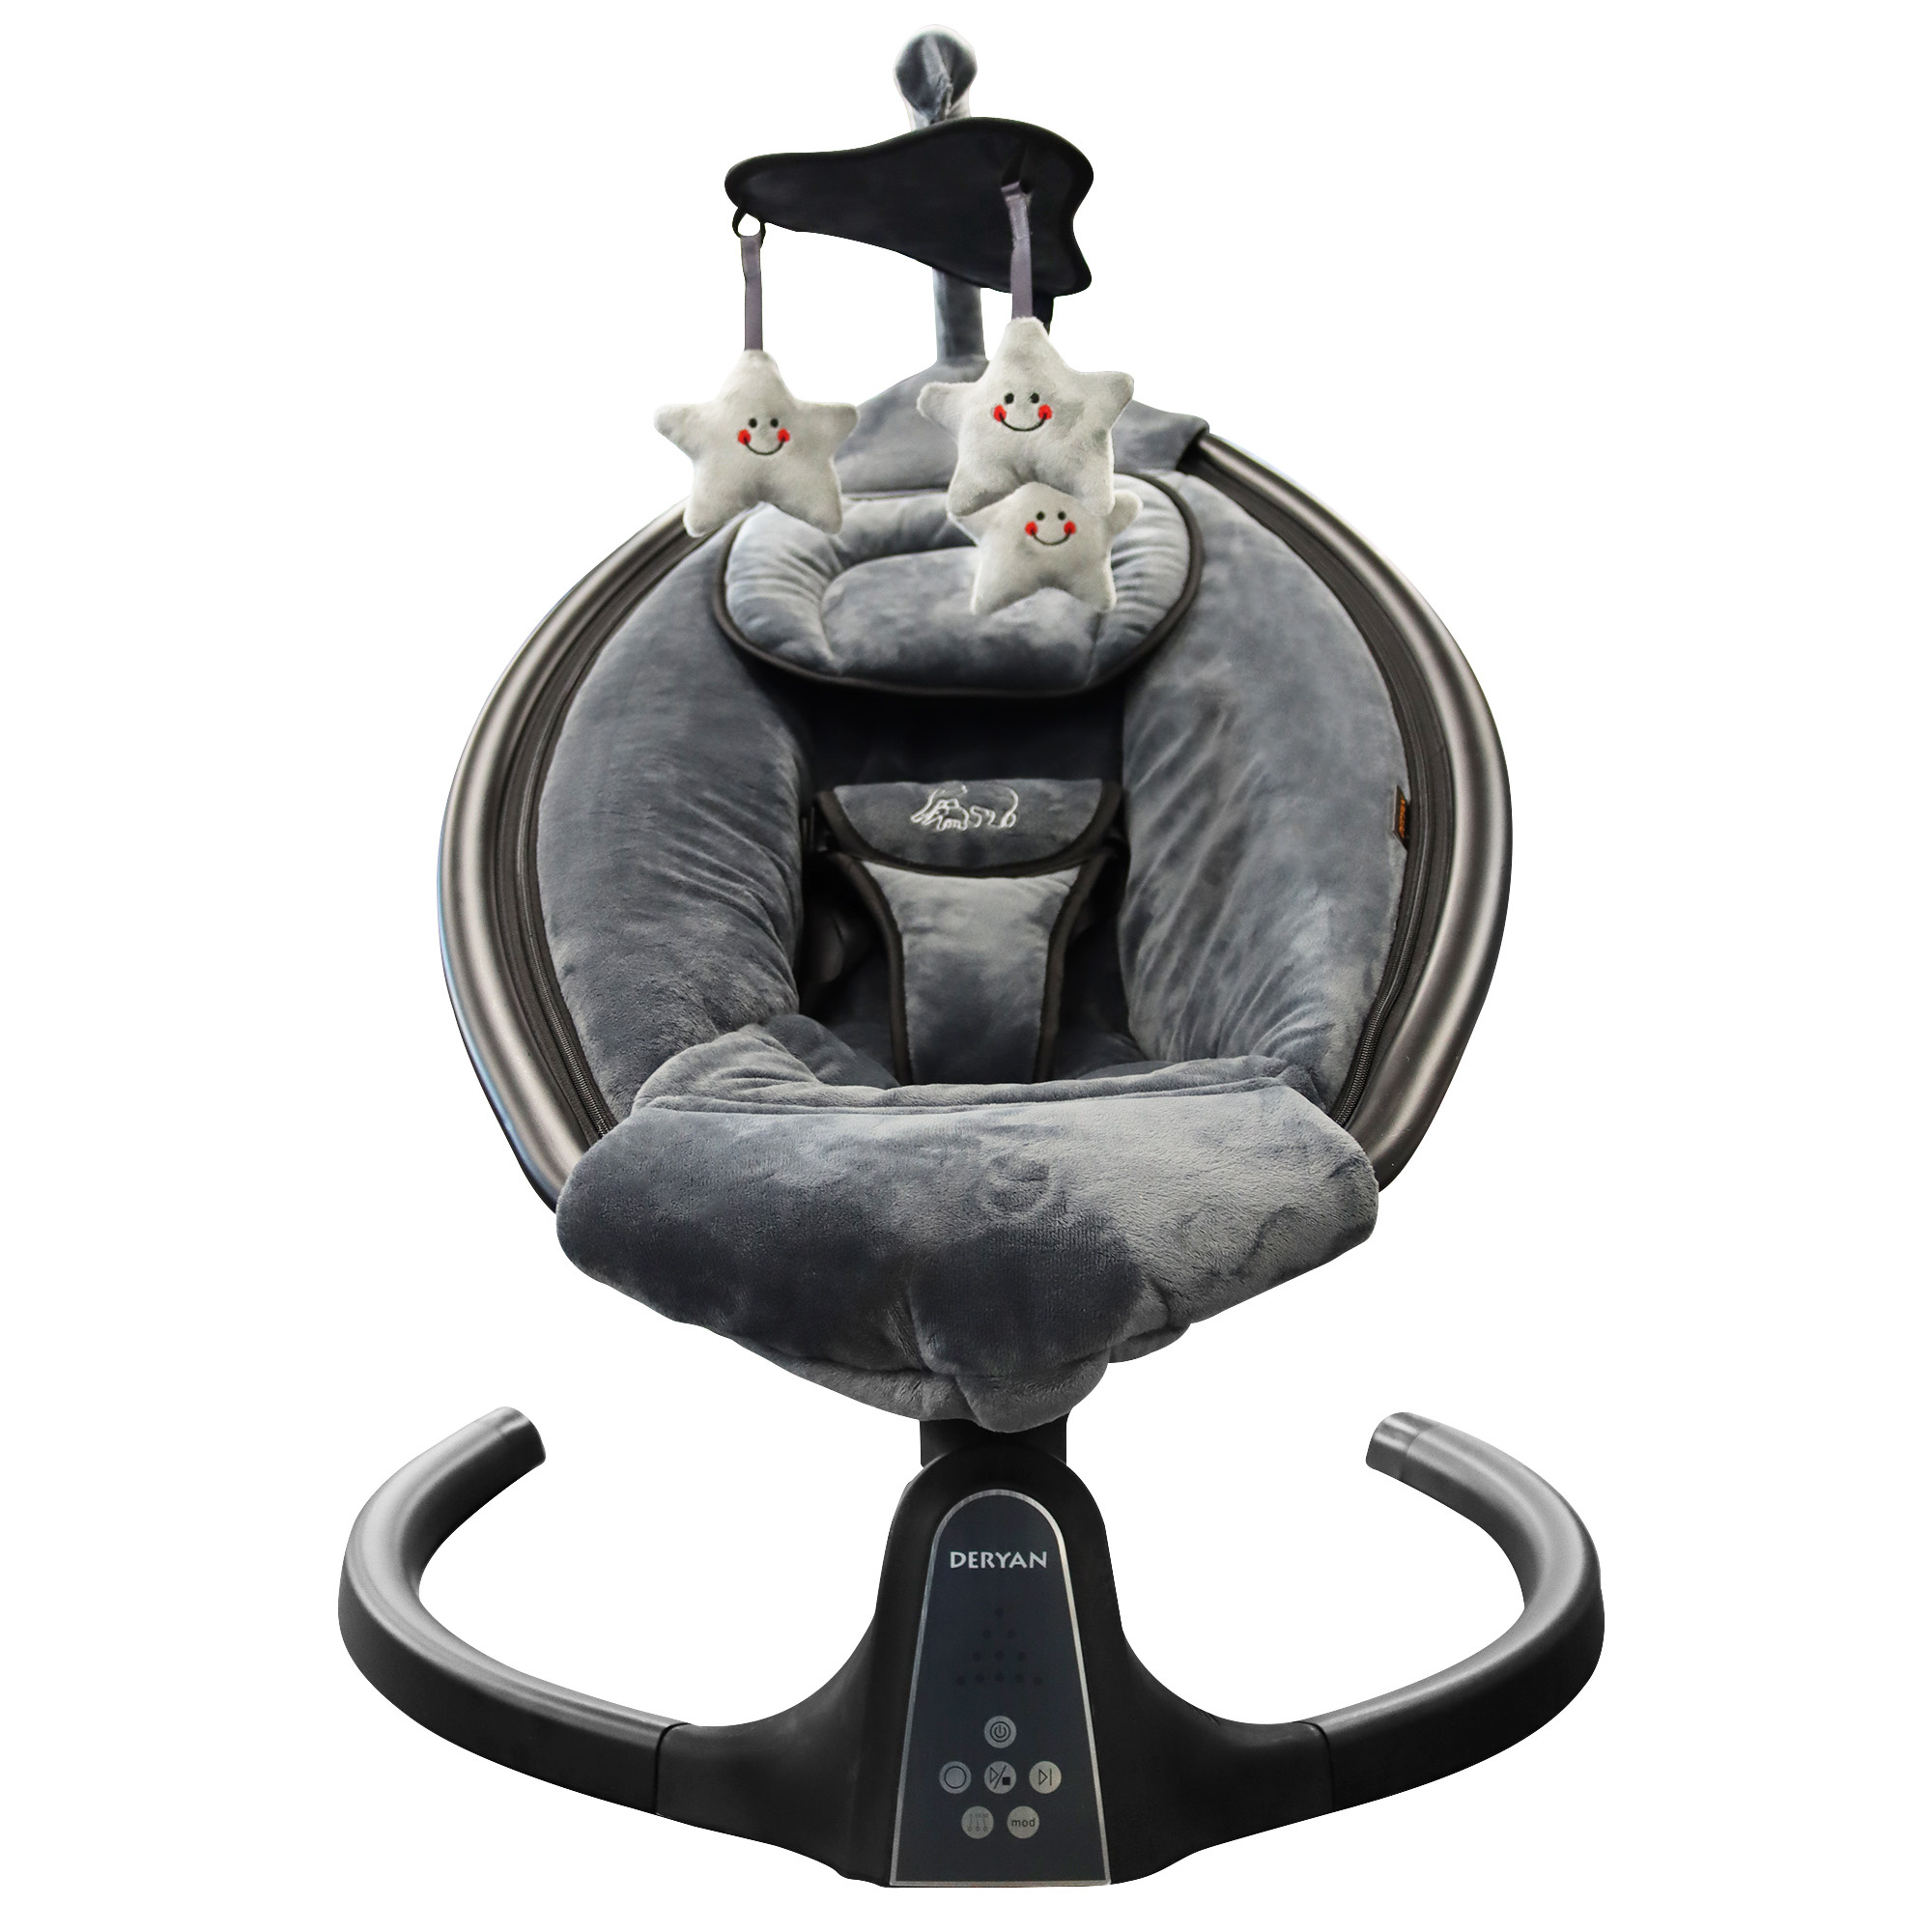 haak Bijzettafeltje terugvallen Deryan Baby Wipstoel - Schommelstoel - Elektrische schommel stoel baby -  Schommelstoel met Bluetoothfunctie en Afstandsbediening - BABY-PHANT